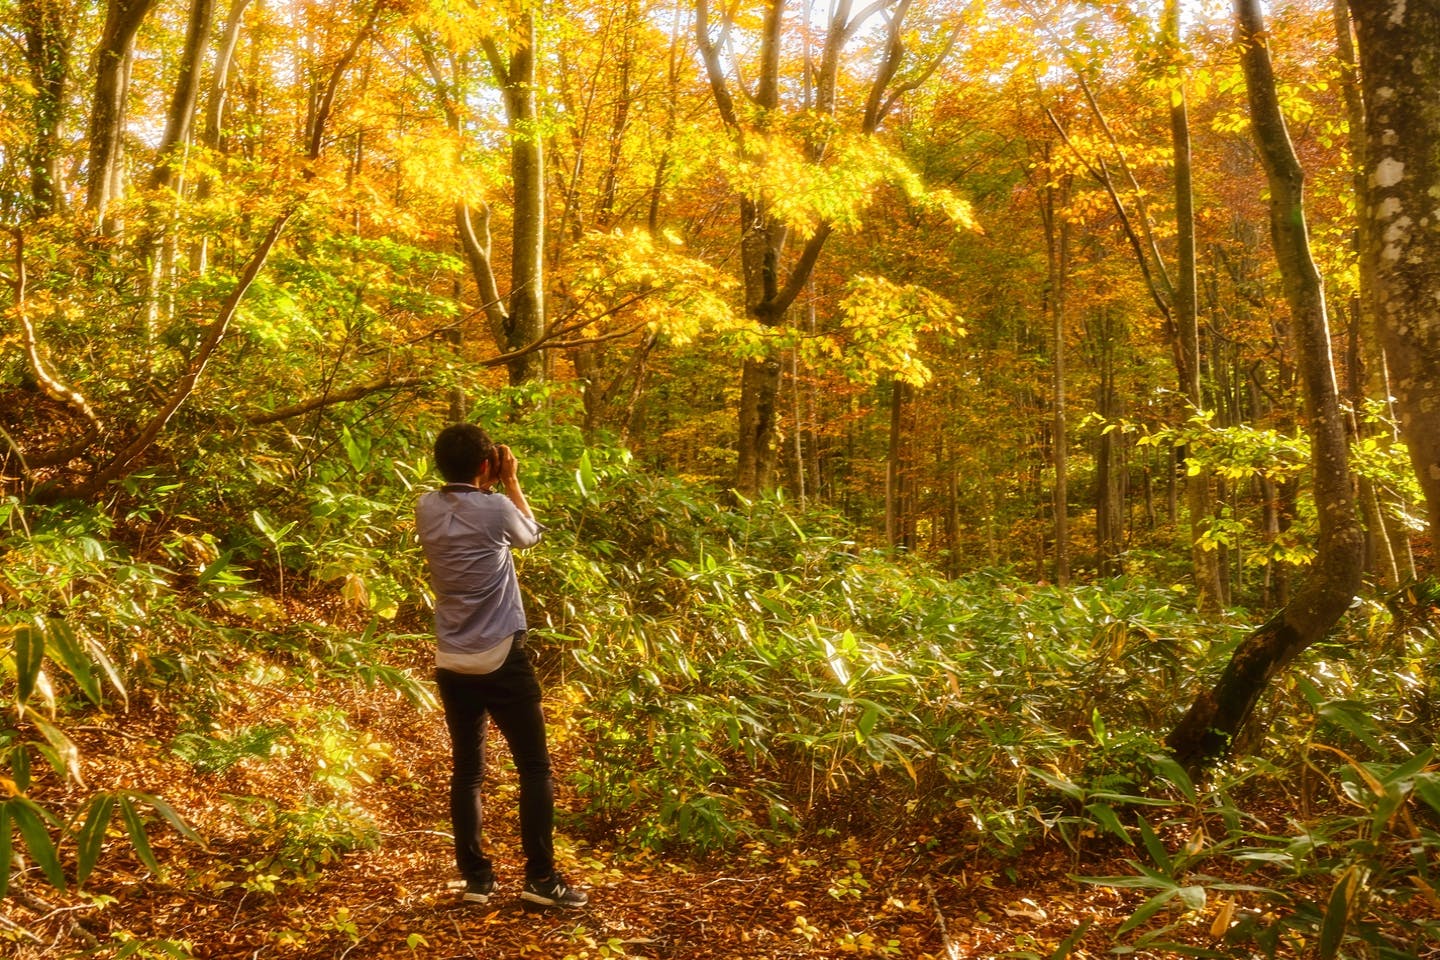 【秋田・田沢湖・トレッキング】黄金色のブナ森の中で自然を満喫するトレッキングプラン